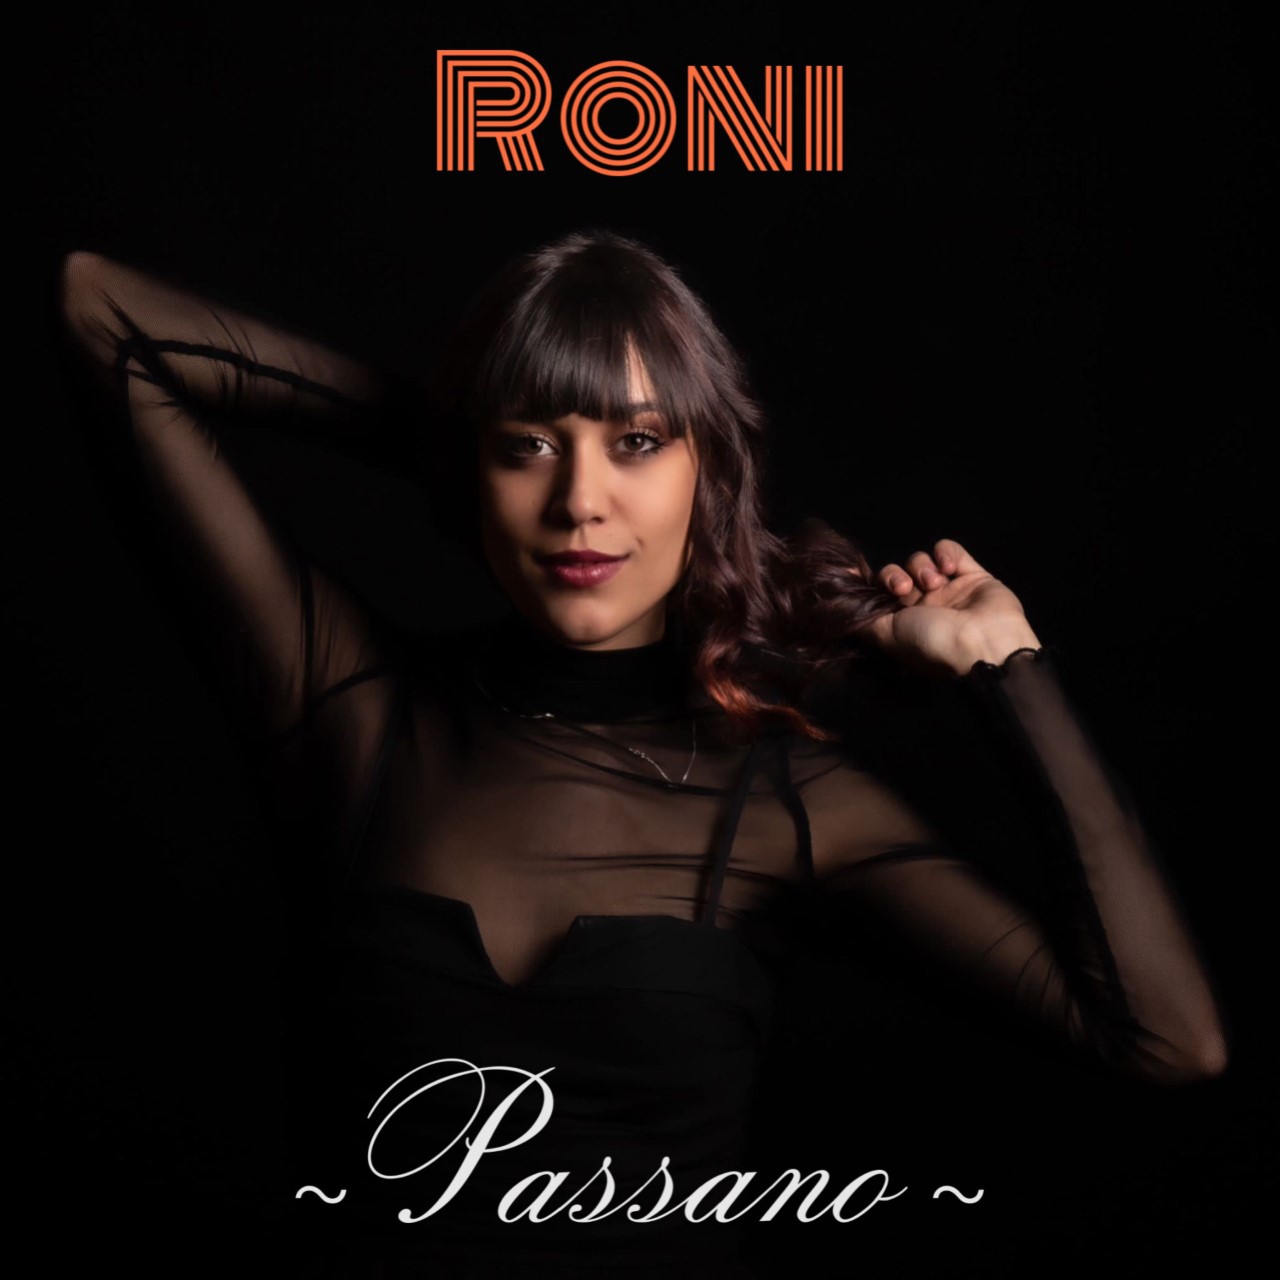 Roni - Il singolo d’esordio “Passano”